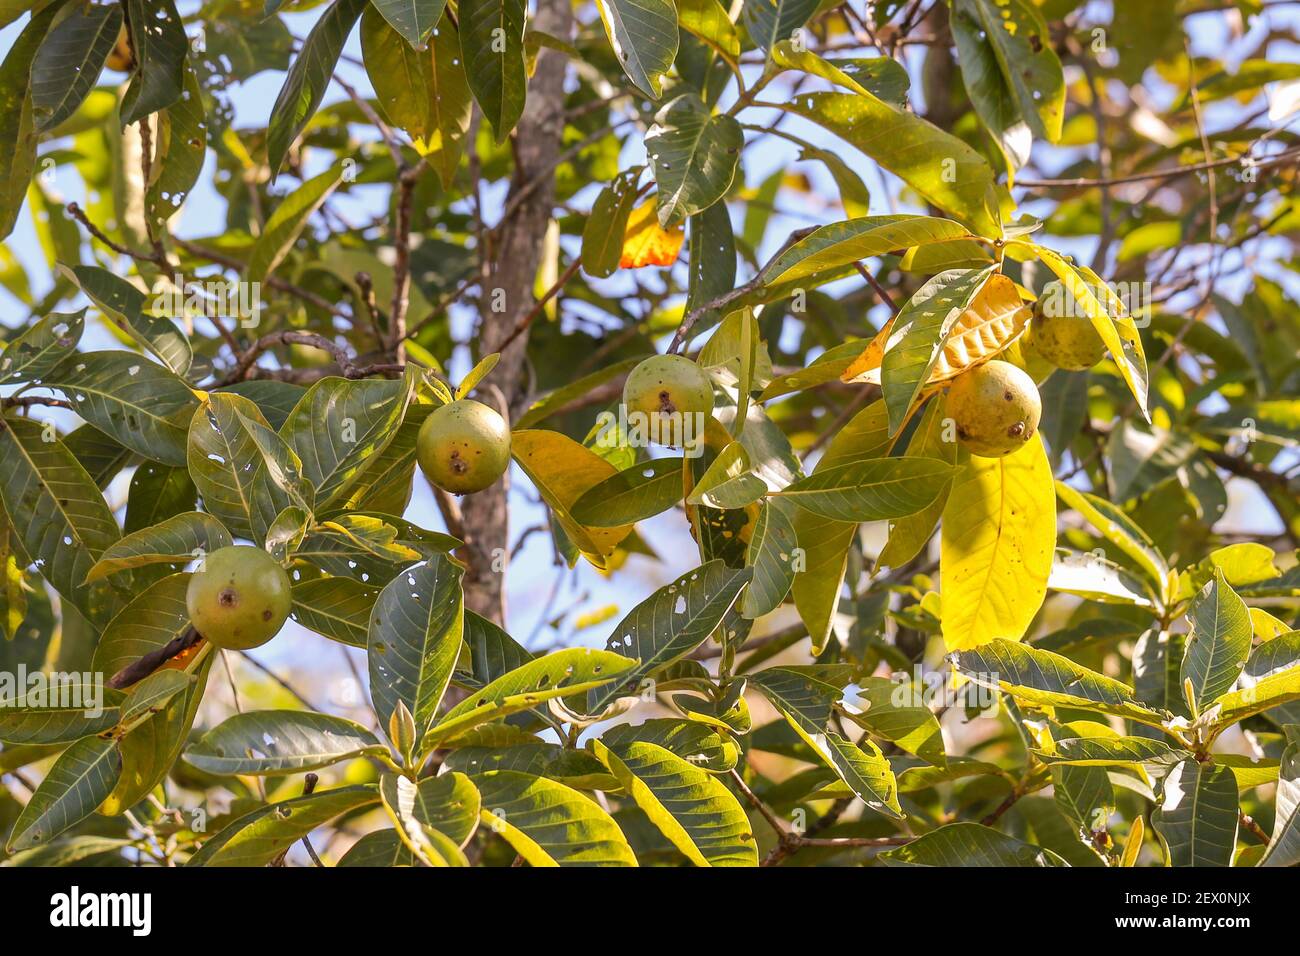 Árbol con pequeñas frutas amarillas (tal vez una higuera o guayaba) en el Parque Nacional Chapada dos Guimaraes en Mato Grosso, Brasil Foto de stock